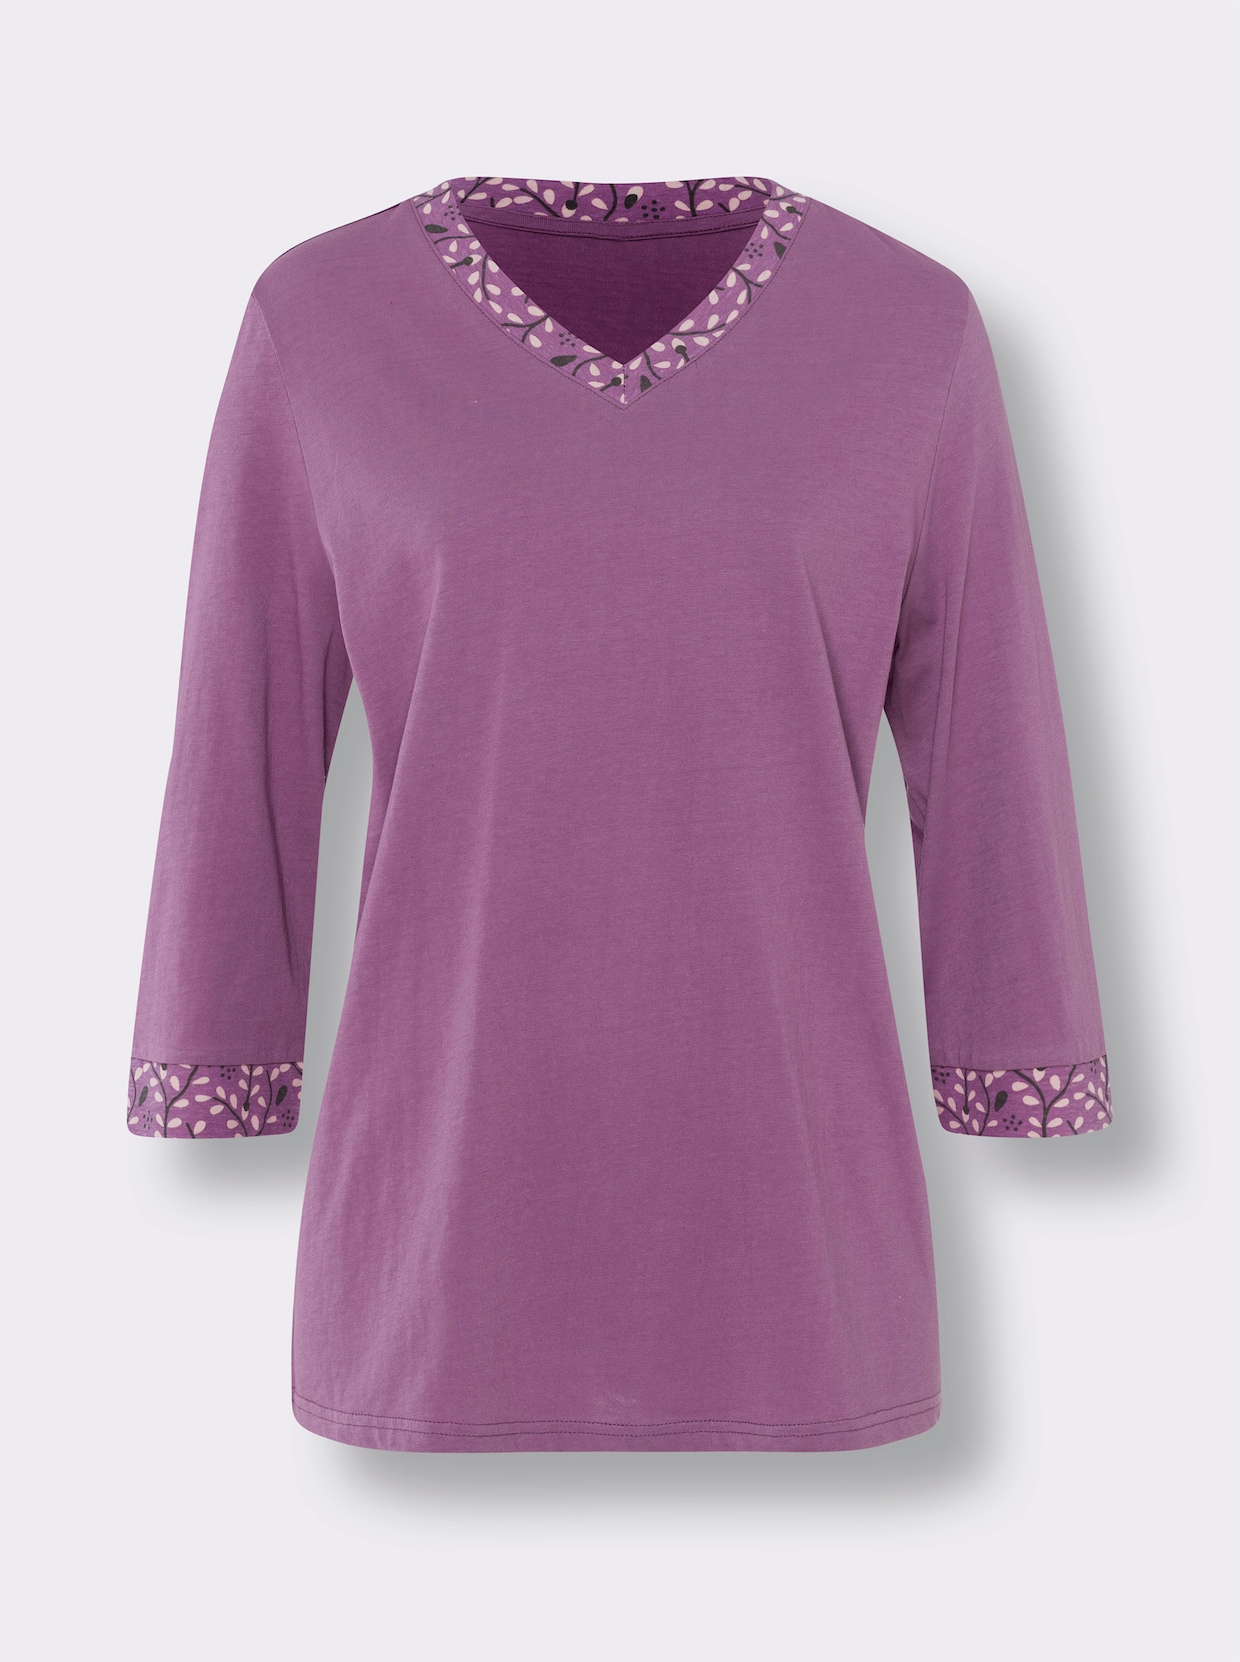 Schlafanzug - violett-hellrosé-bedruckt